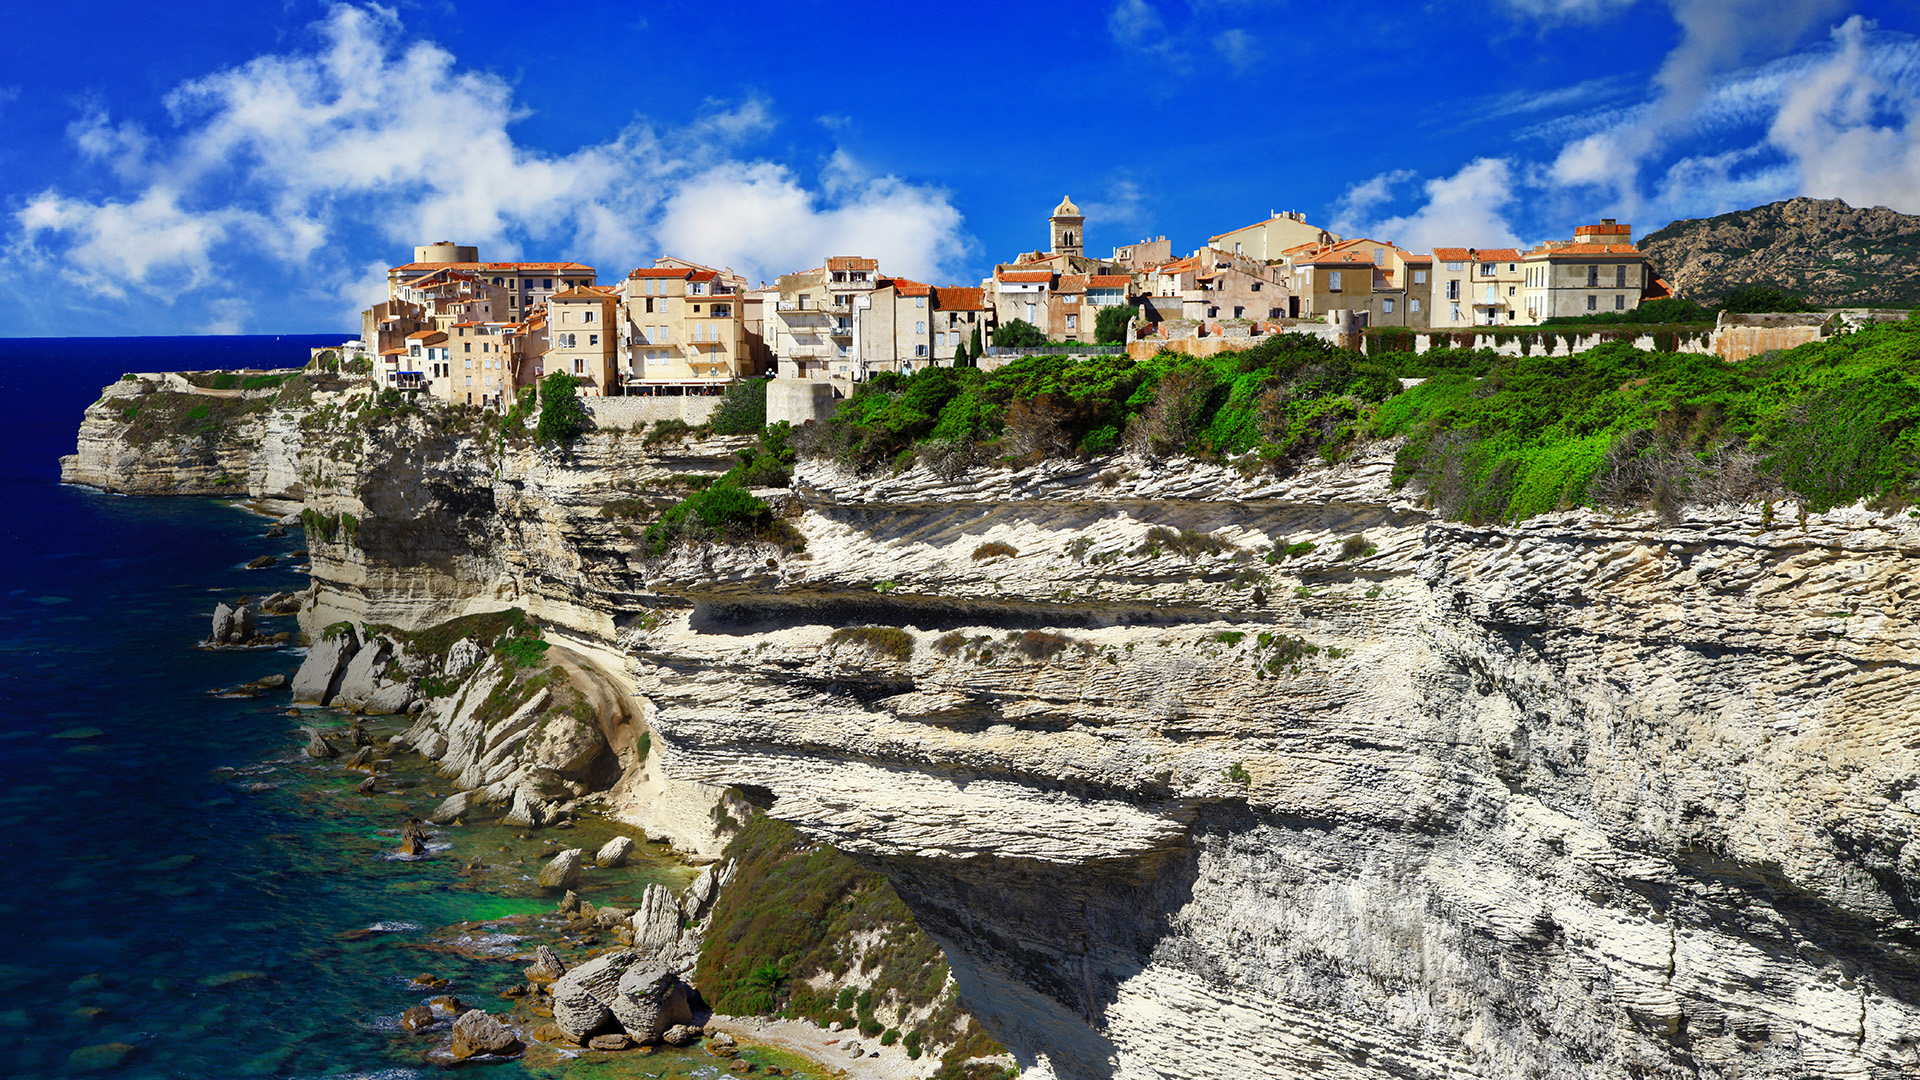 Upper town of Bonifacio on a chalkstone sea cliff, Corsica, France ...